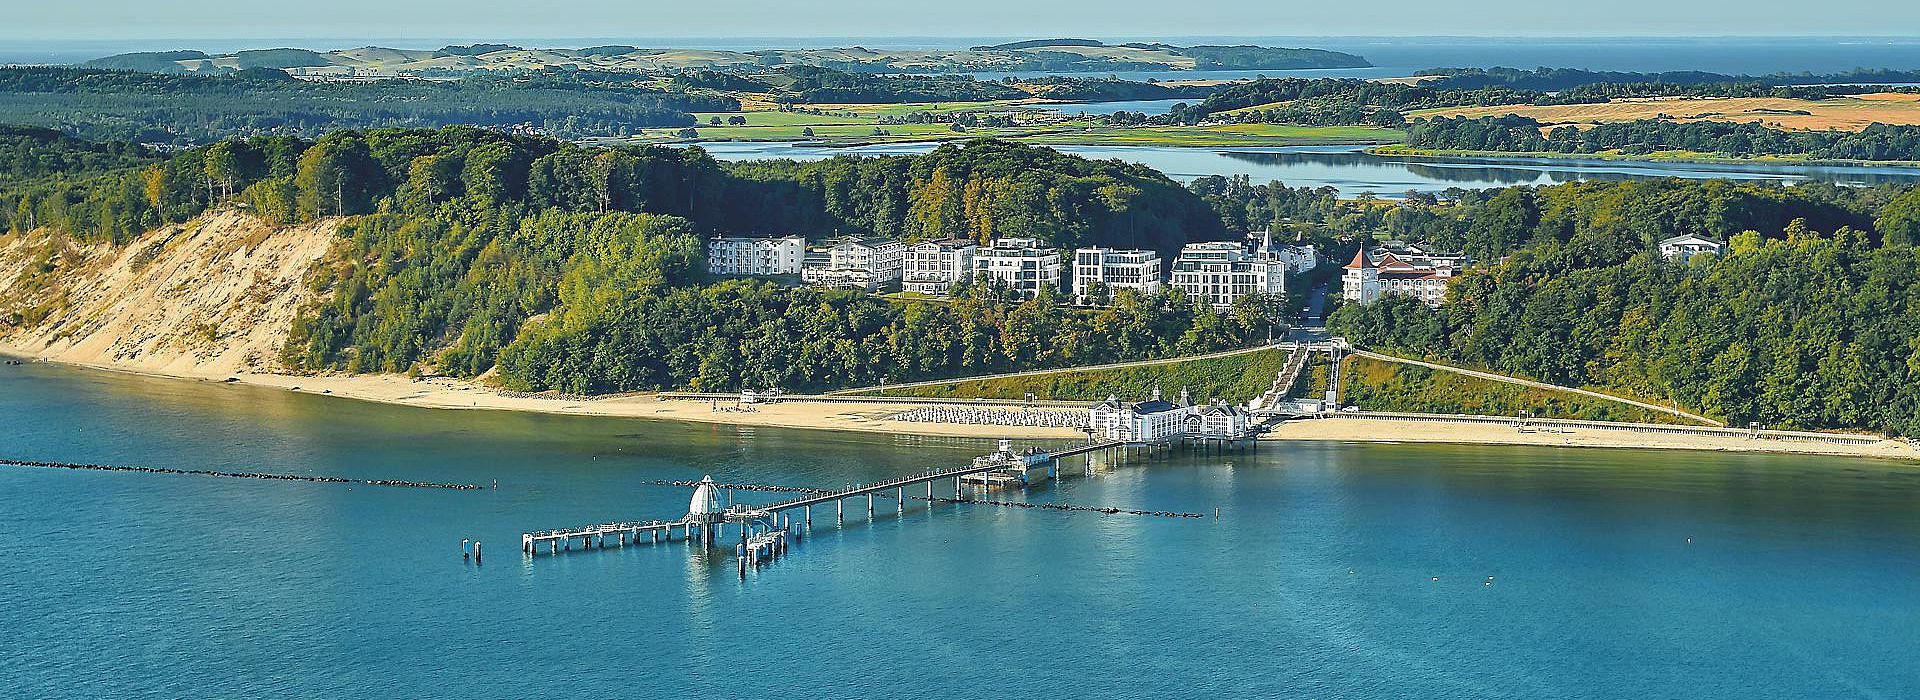 Blick auf das Seeschloss Hotel Sellin von der Ostsee aus